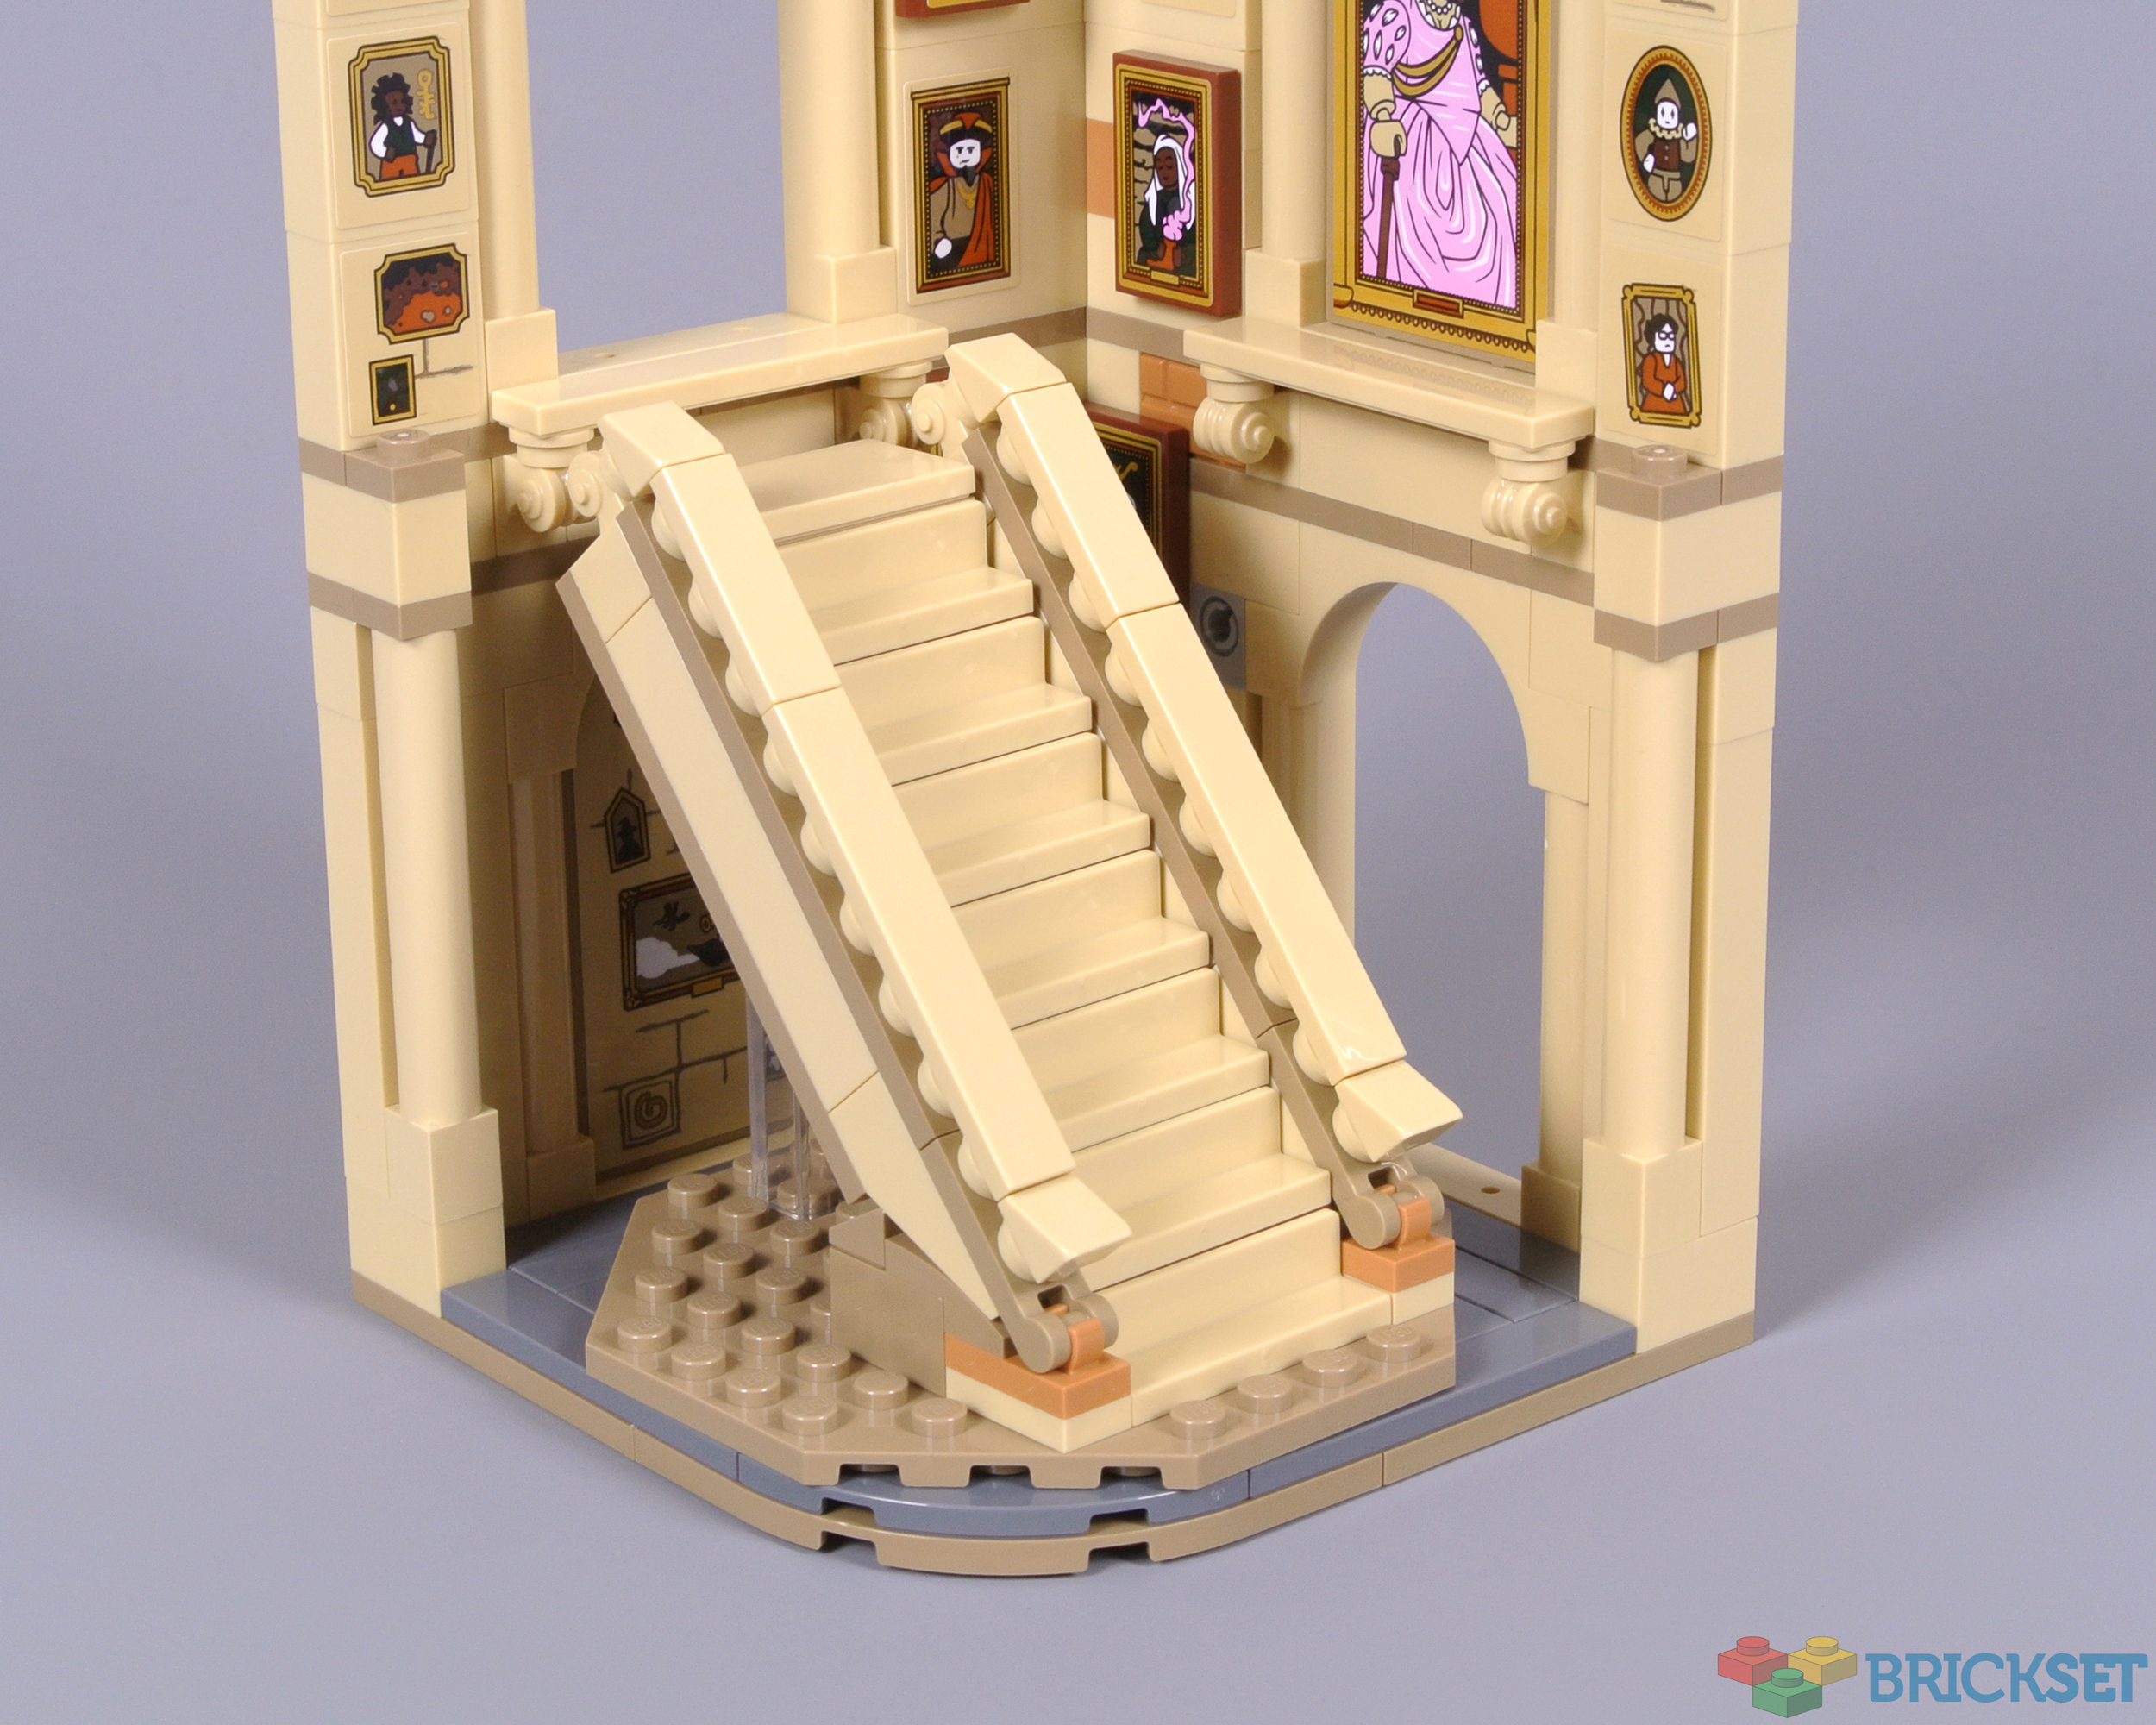 Chez LEGO : le cadeau Harry Potter 40577 Hogwarts Grand Staircase